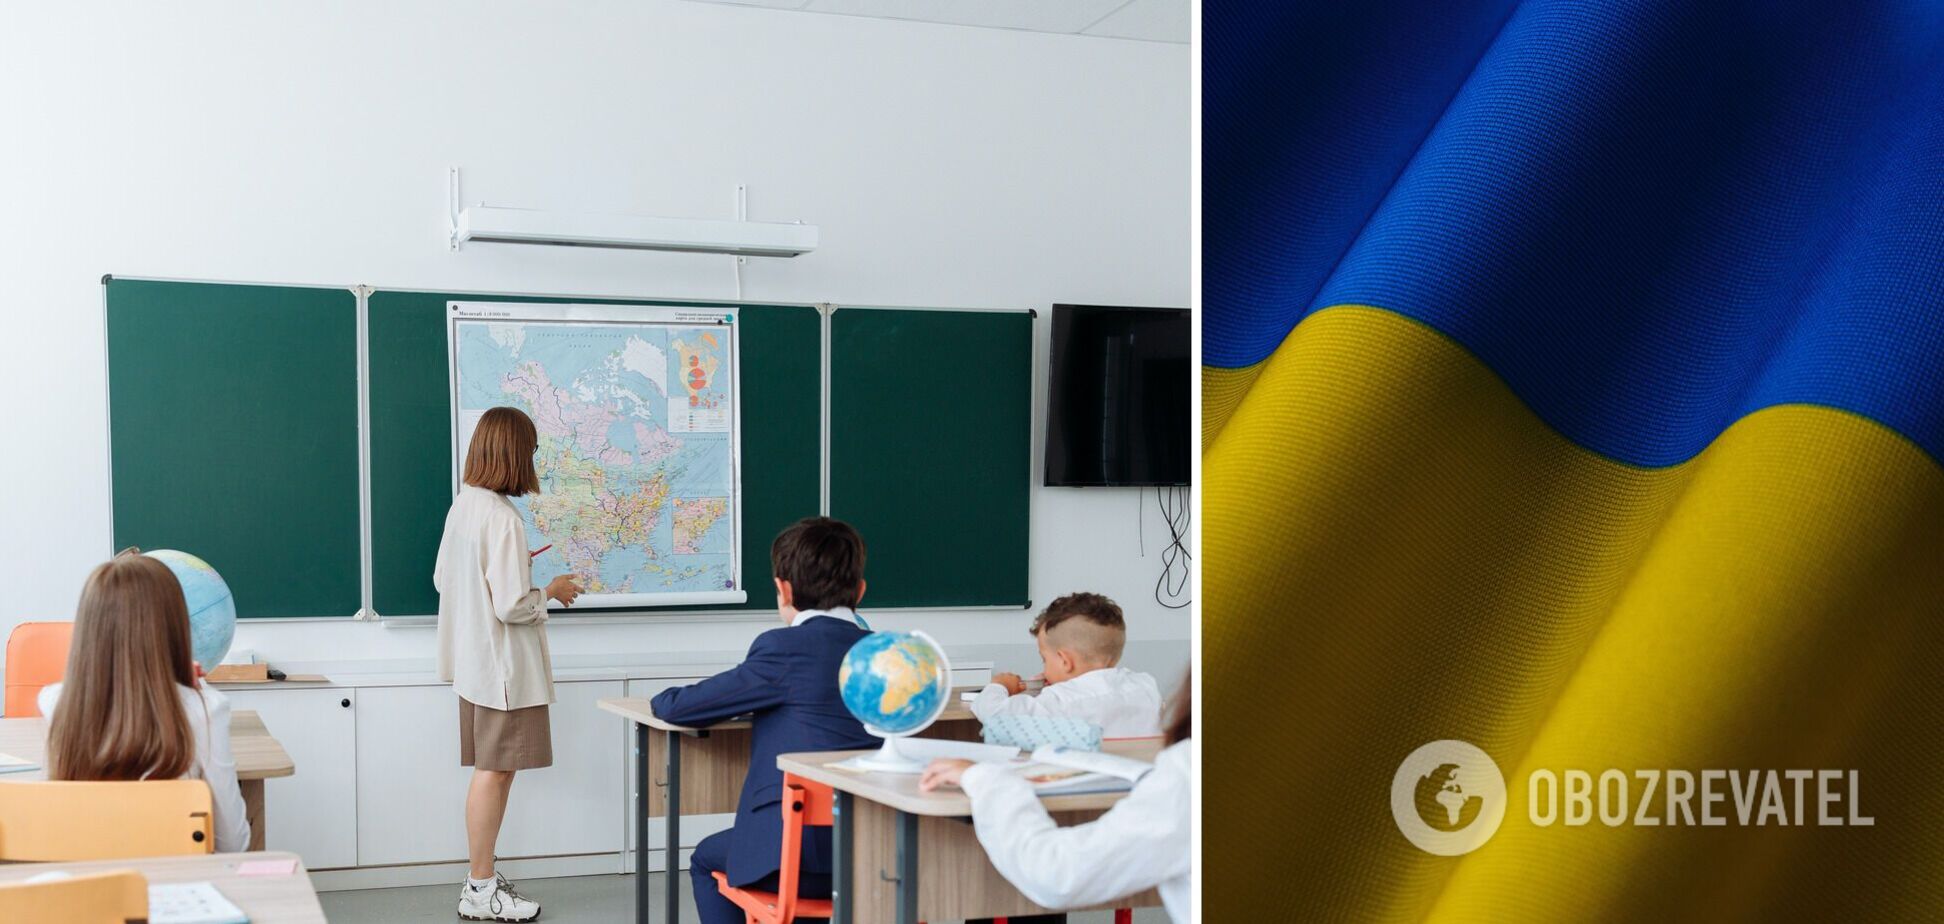 Украинский язык стал вторым иностранным в школах Чехии: как еще поддерживают беженцев из Украины и почему плачут дети